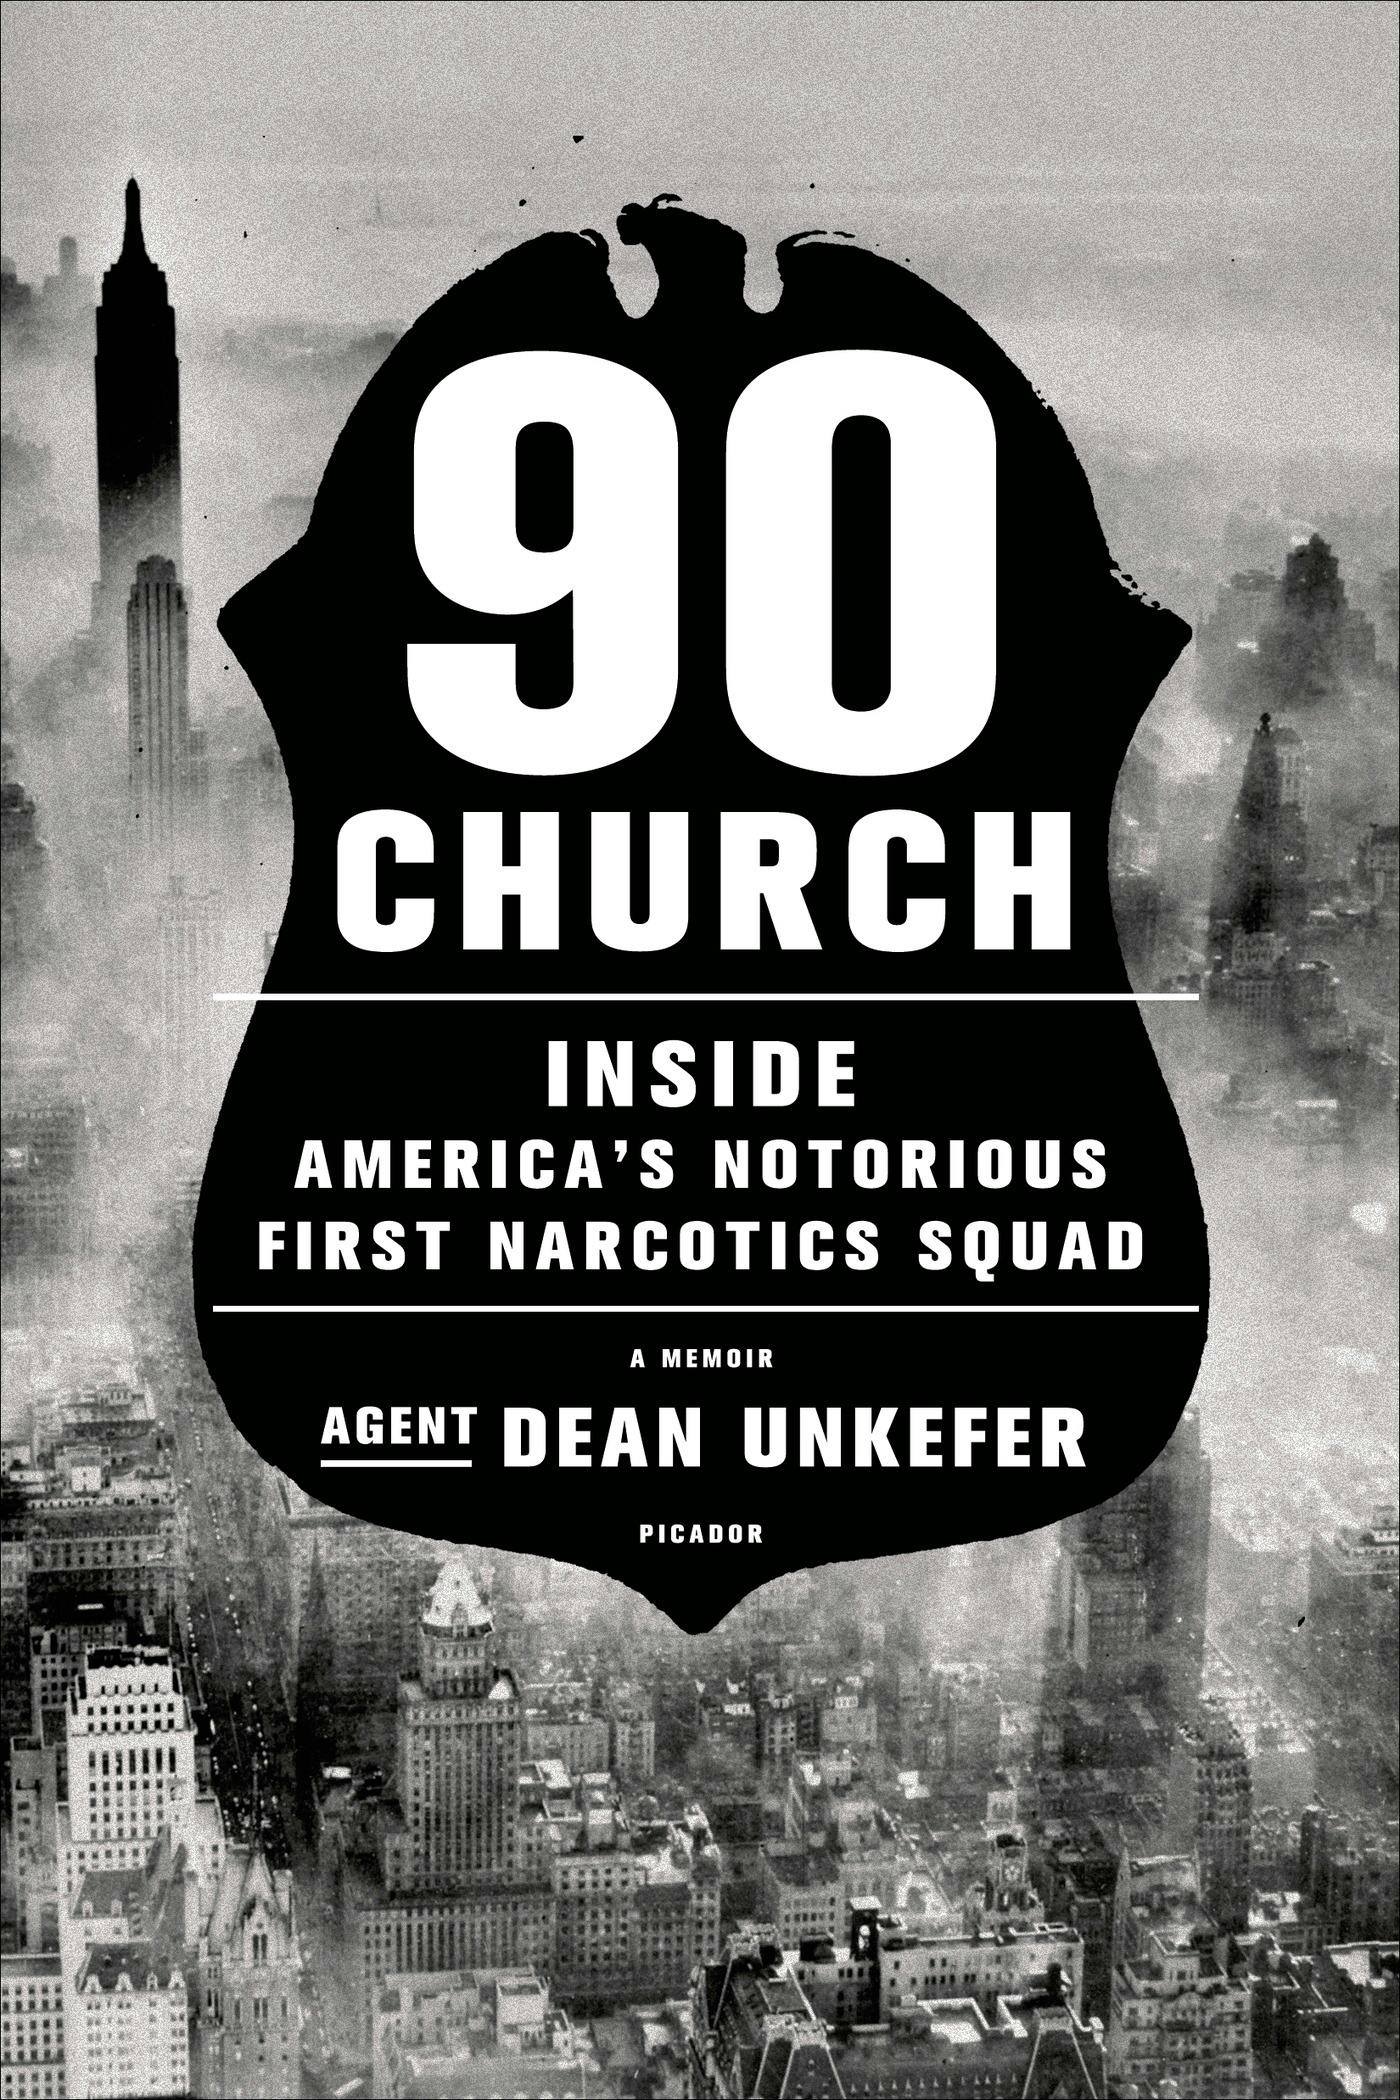 90 Church